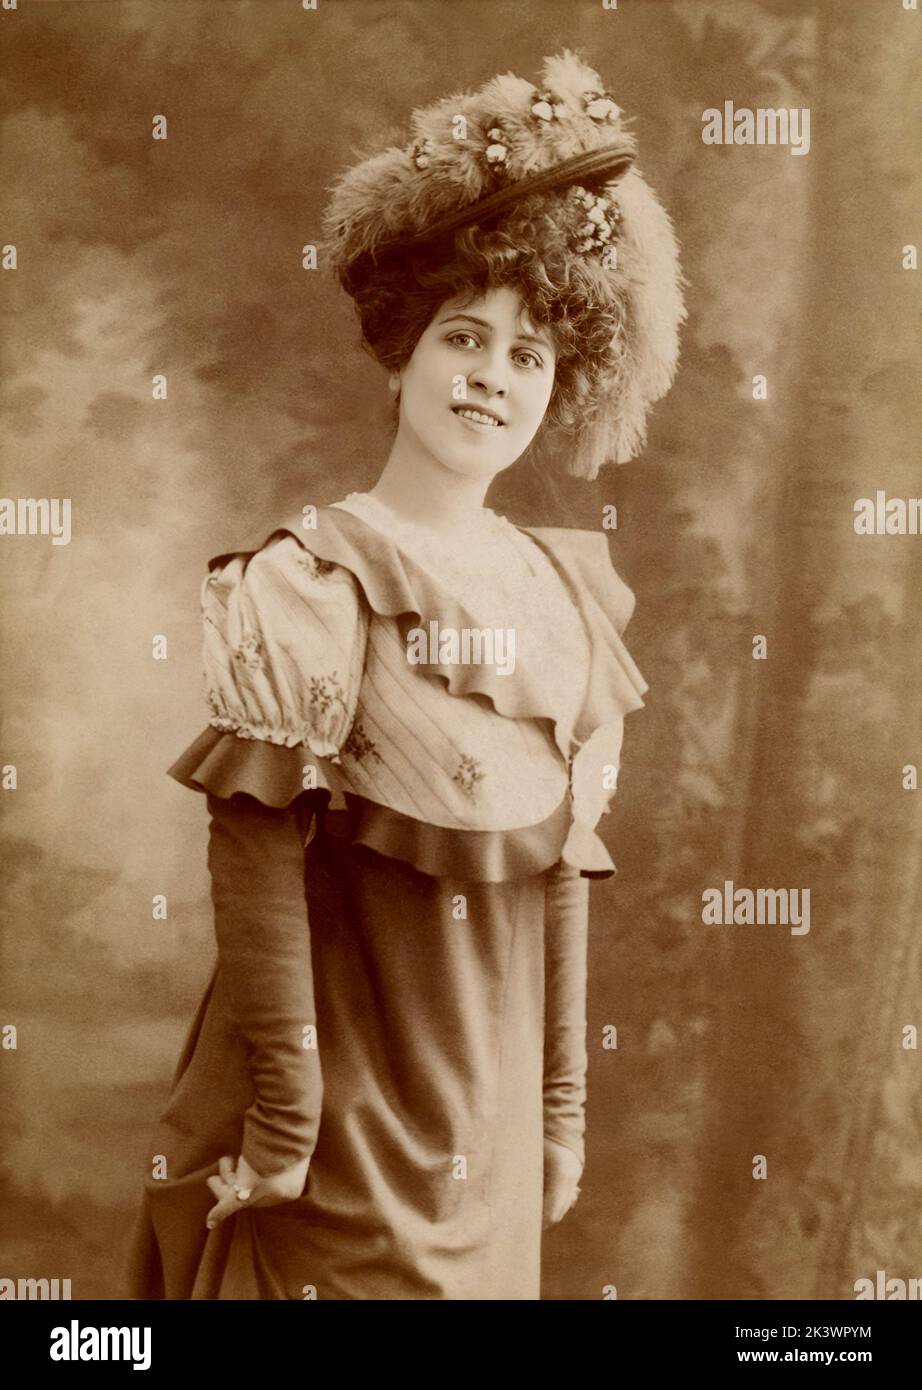 1899 ca, Paris , FRANCE :  The french Theatre and Silent Movie actress BRESIL ( 1880 - 1961 ) born Marguerite Lucile Brésil Neurdein . Photo by Jean Reutlinger ( 1875 - 1917 ) . - TEATRO - THEATRE - CINEMA MUTO -  FRANCIA - ritratto - portrait  - FASHION - MODA FEMMINILE - HAT - CAPPELLO - DIVA - DIVINA - BELLE EPOQUE - ostrich FEATHERS - PIUME di STRUZZO - smile - sorriso - HISTORY - FOTO STORICHE - PORTRAIT - RITRATTO ---  ARCHIVIO GBB Stock Photo